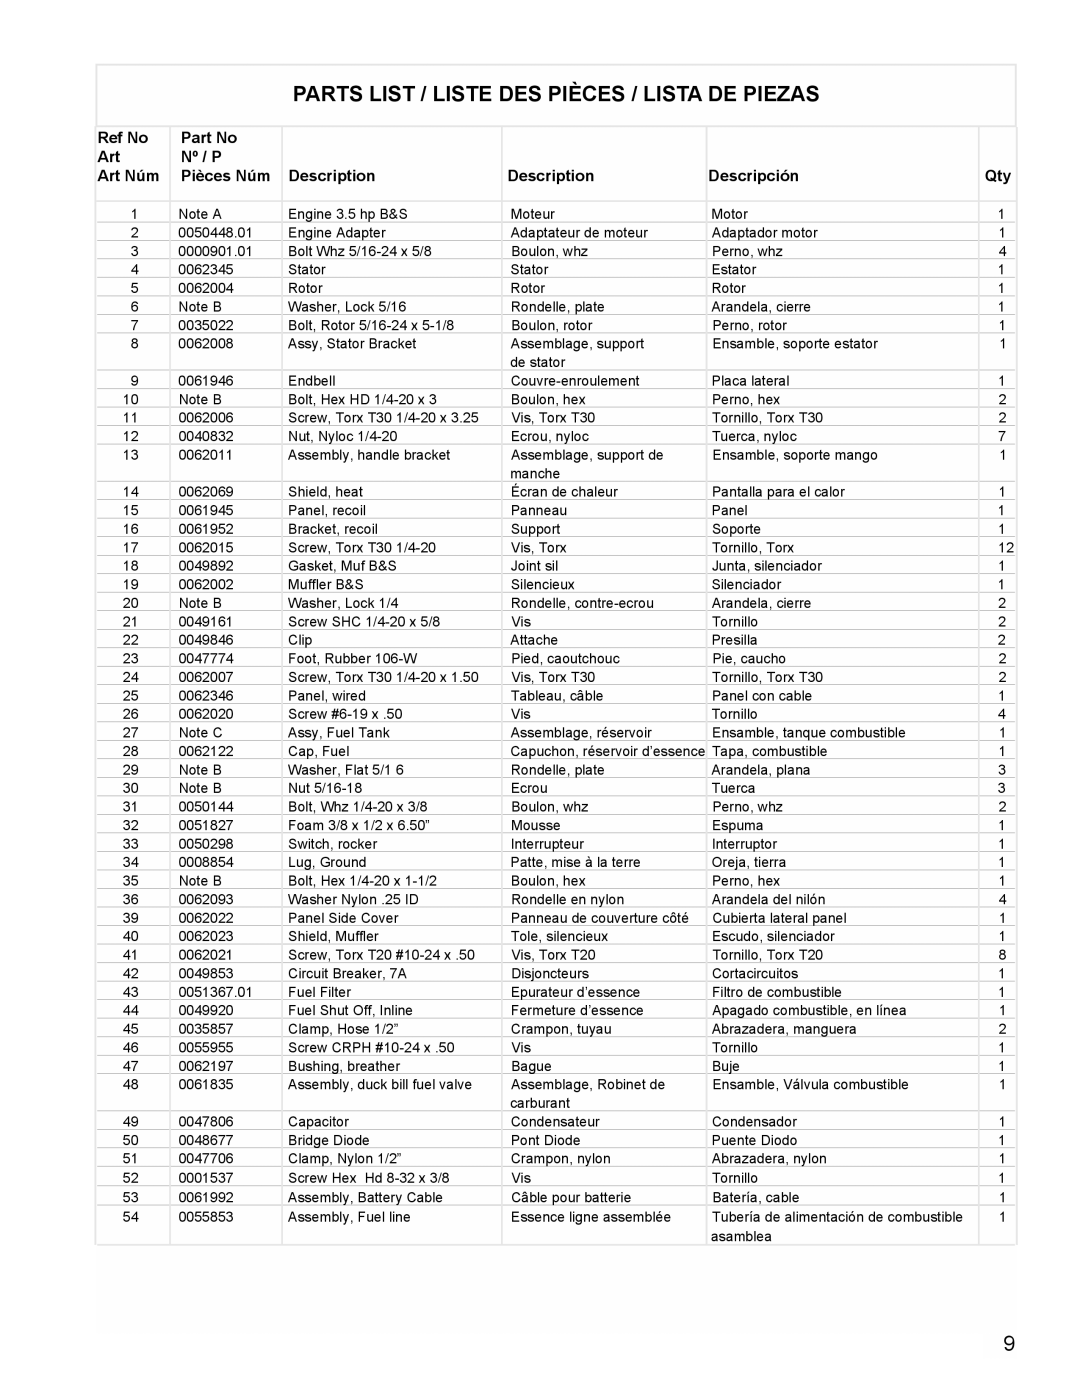 Powermate PE0401853 manual Parts List / Liste Des Pièces / Lista De Piezas, Capuchon, réservoir d’essence 